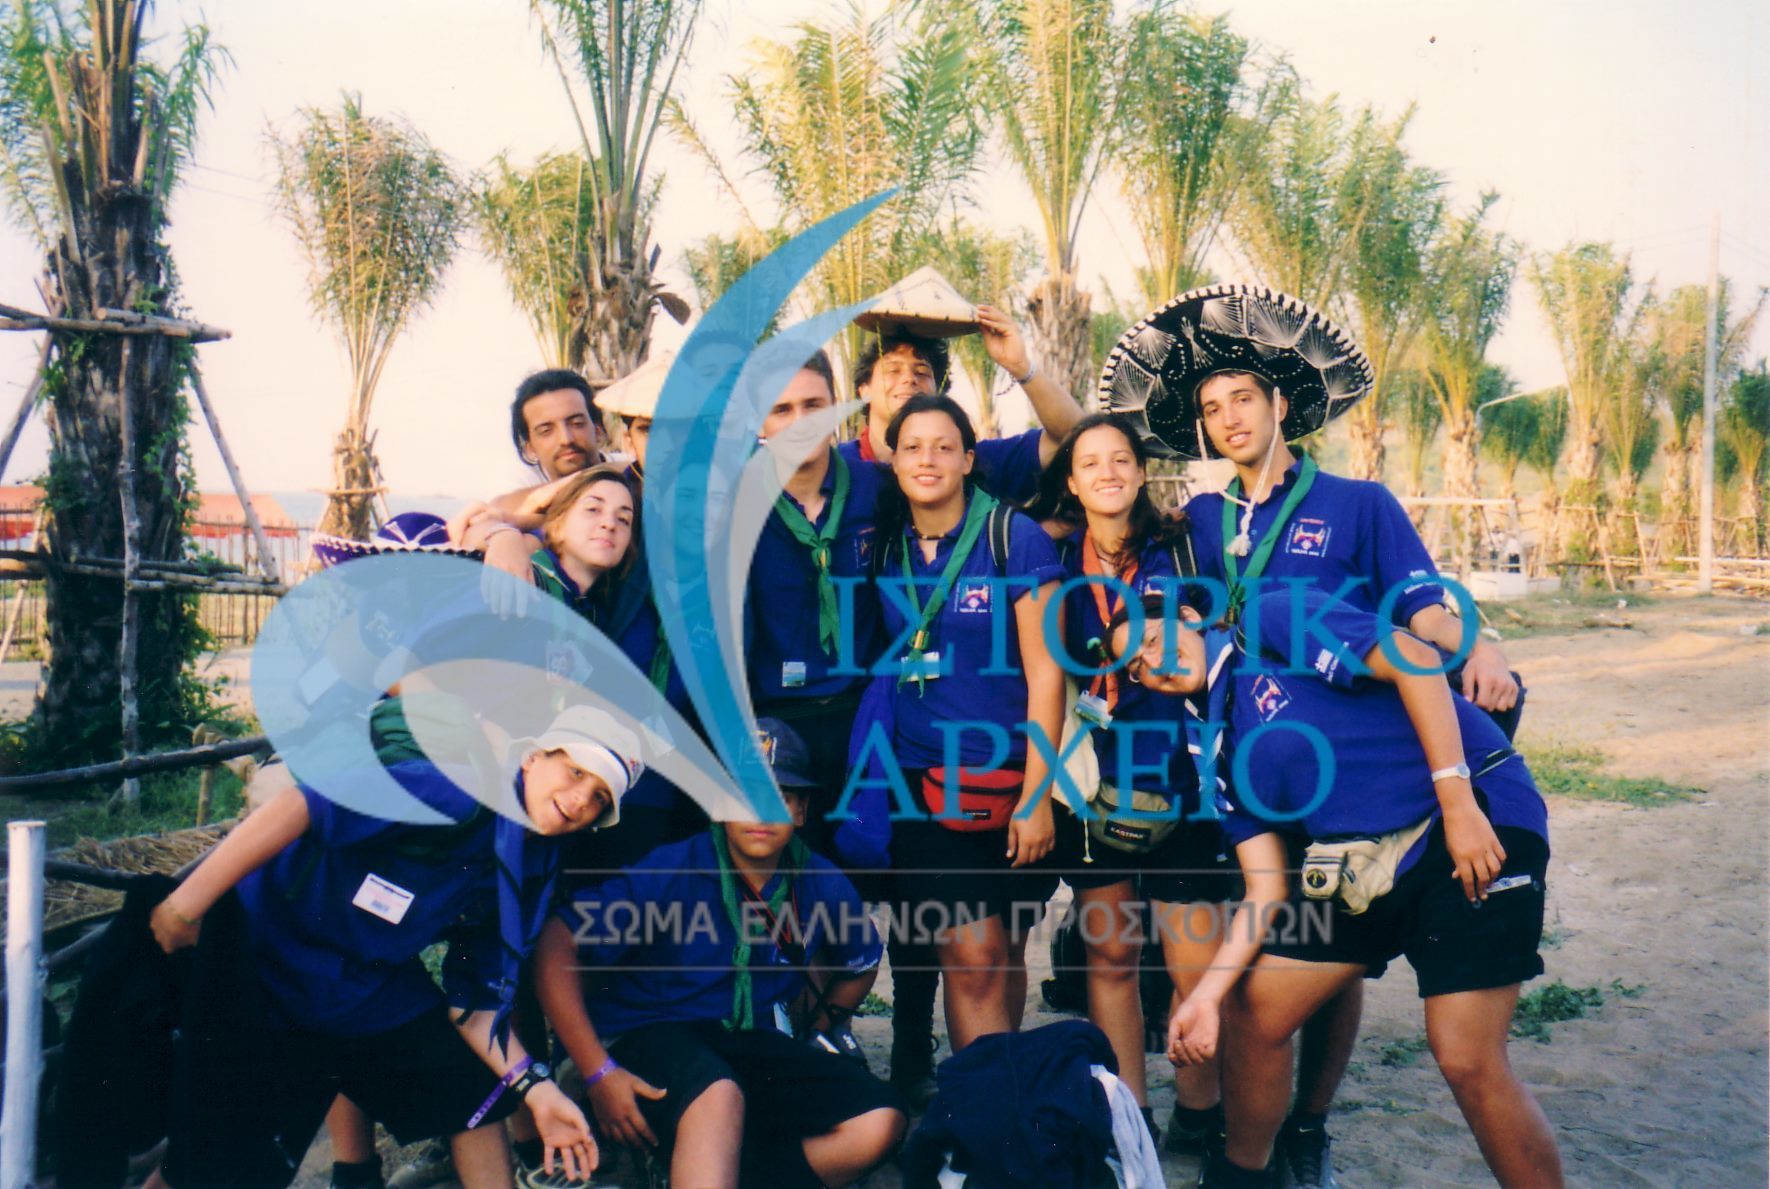 Φωτογραφίες από την ελληνική συμμετοχή στο 20ο Παγκόσμιο Τζάμπορη στην Ταϊλάνδη το 2003.